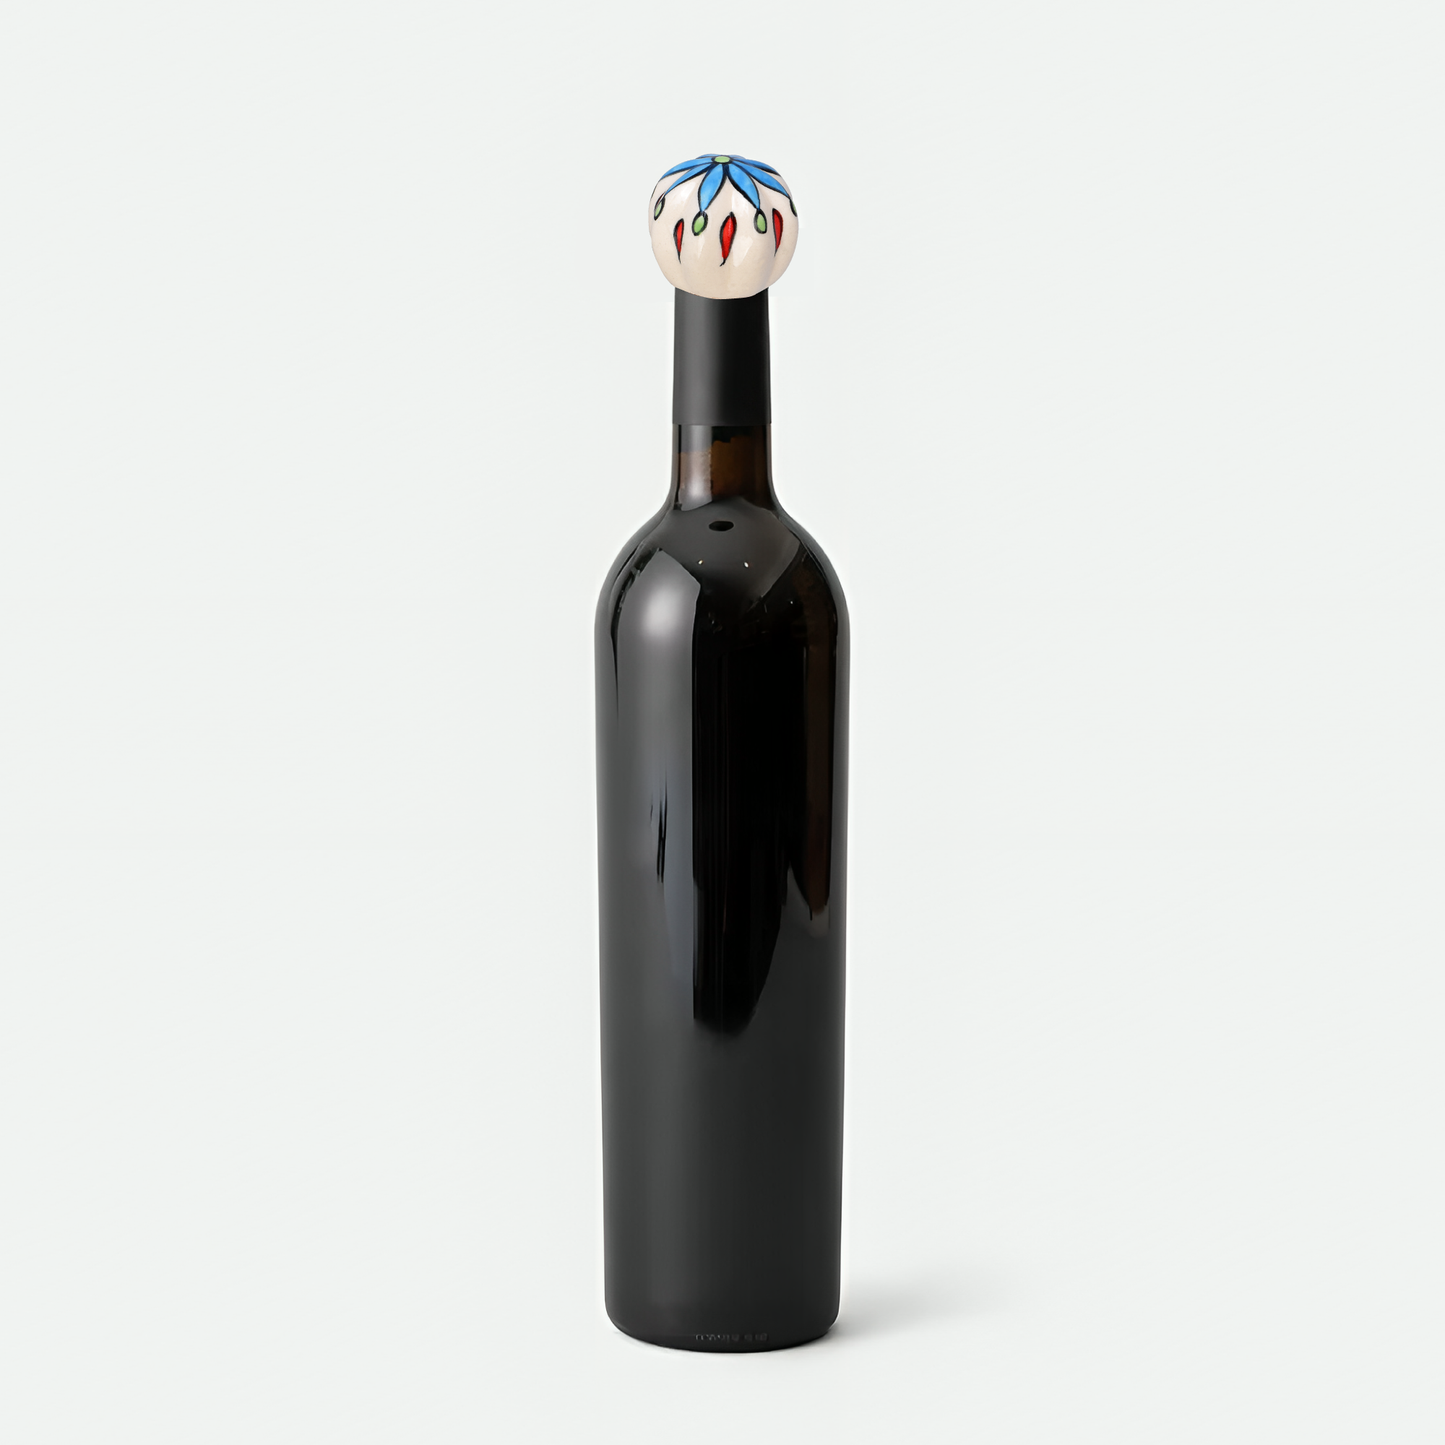 Ceramic Flower Design Wine Bottle Stopper